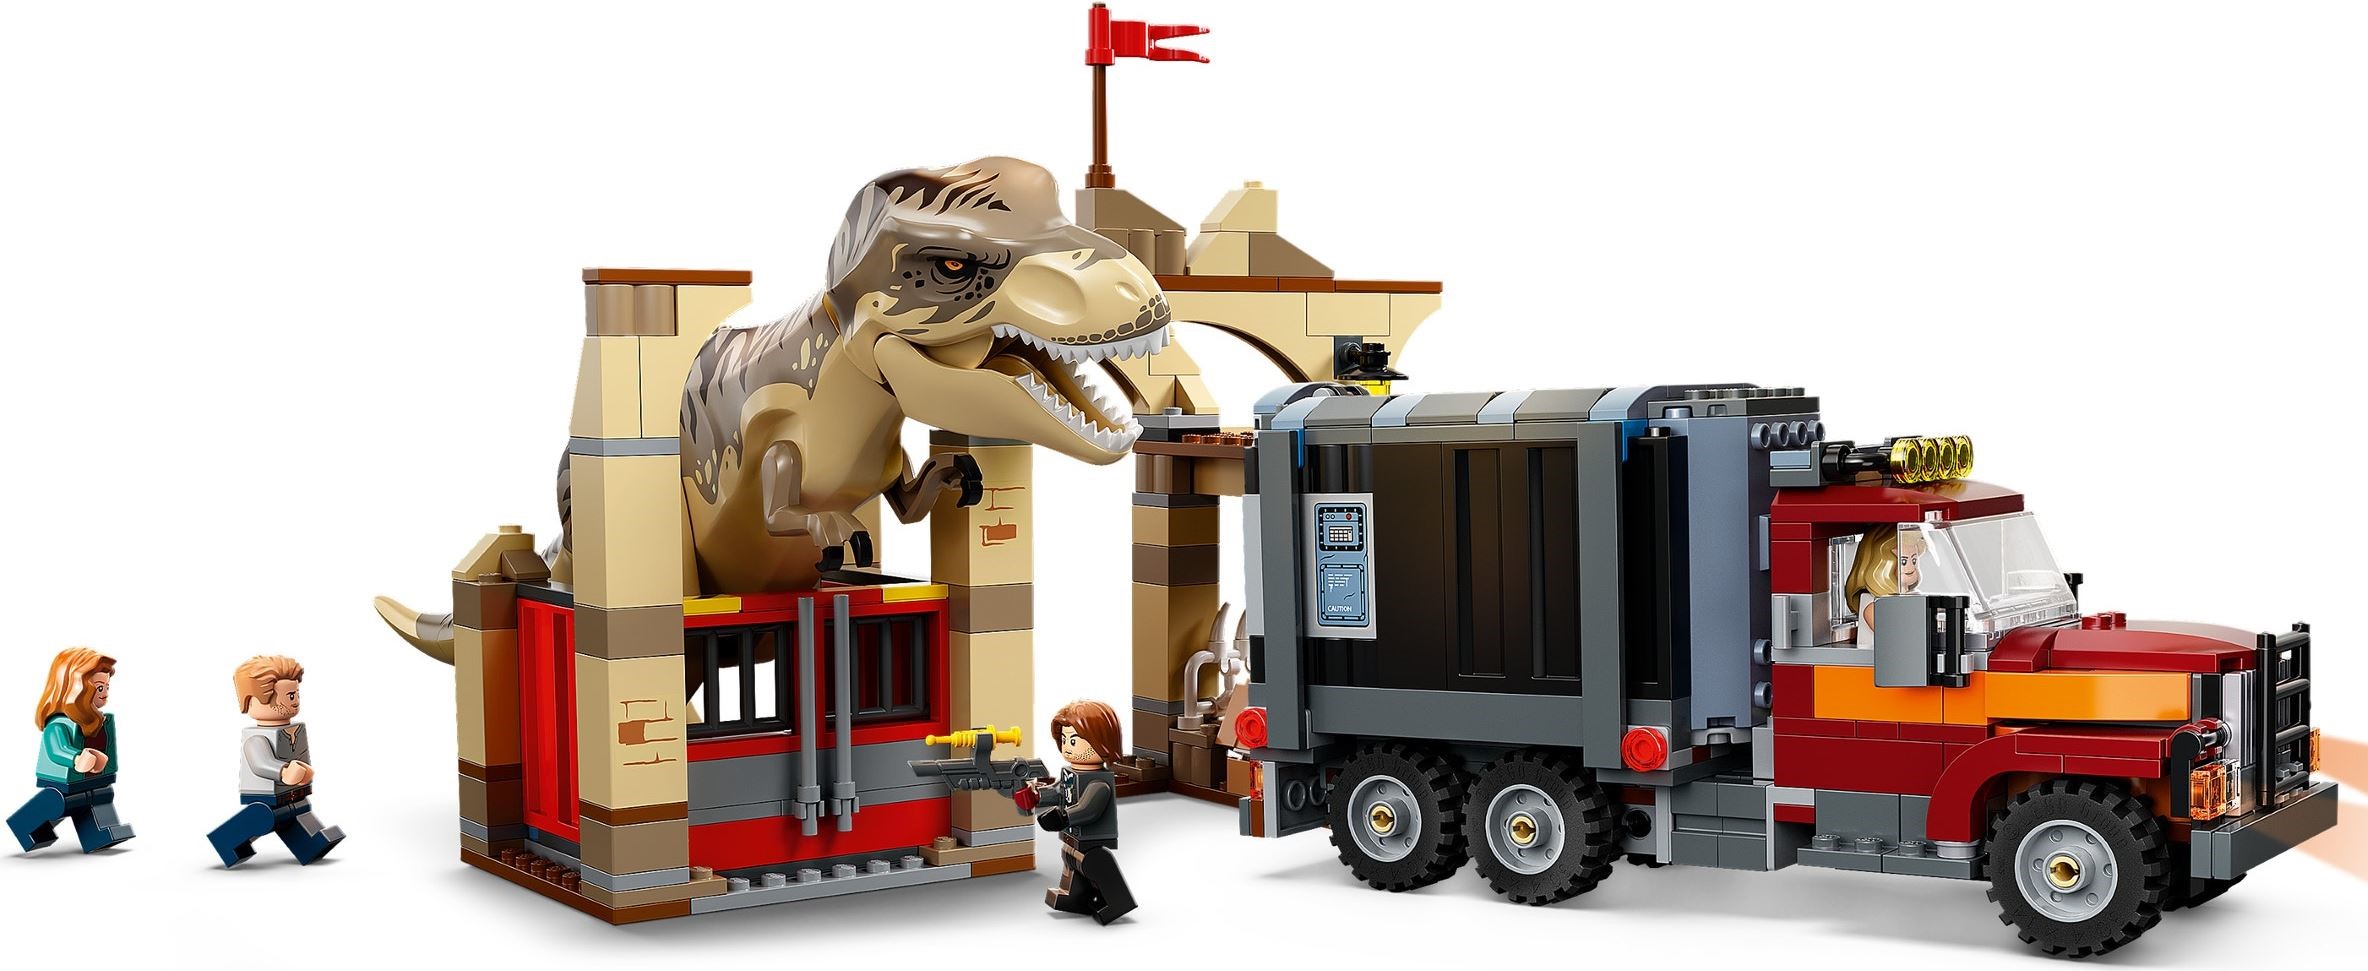 Конструктор LEGO Jurassic World 76948 Побег тираннозавра и атроцираптора